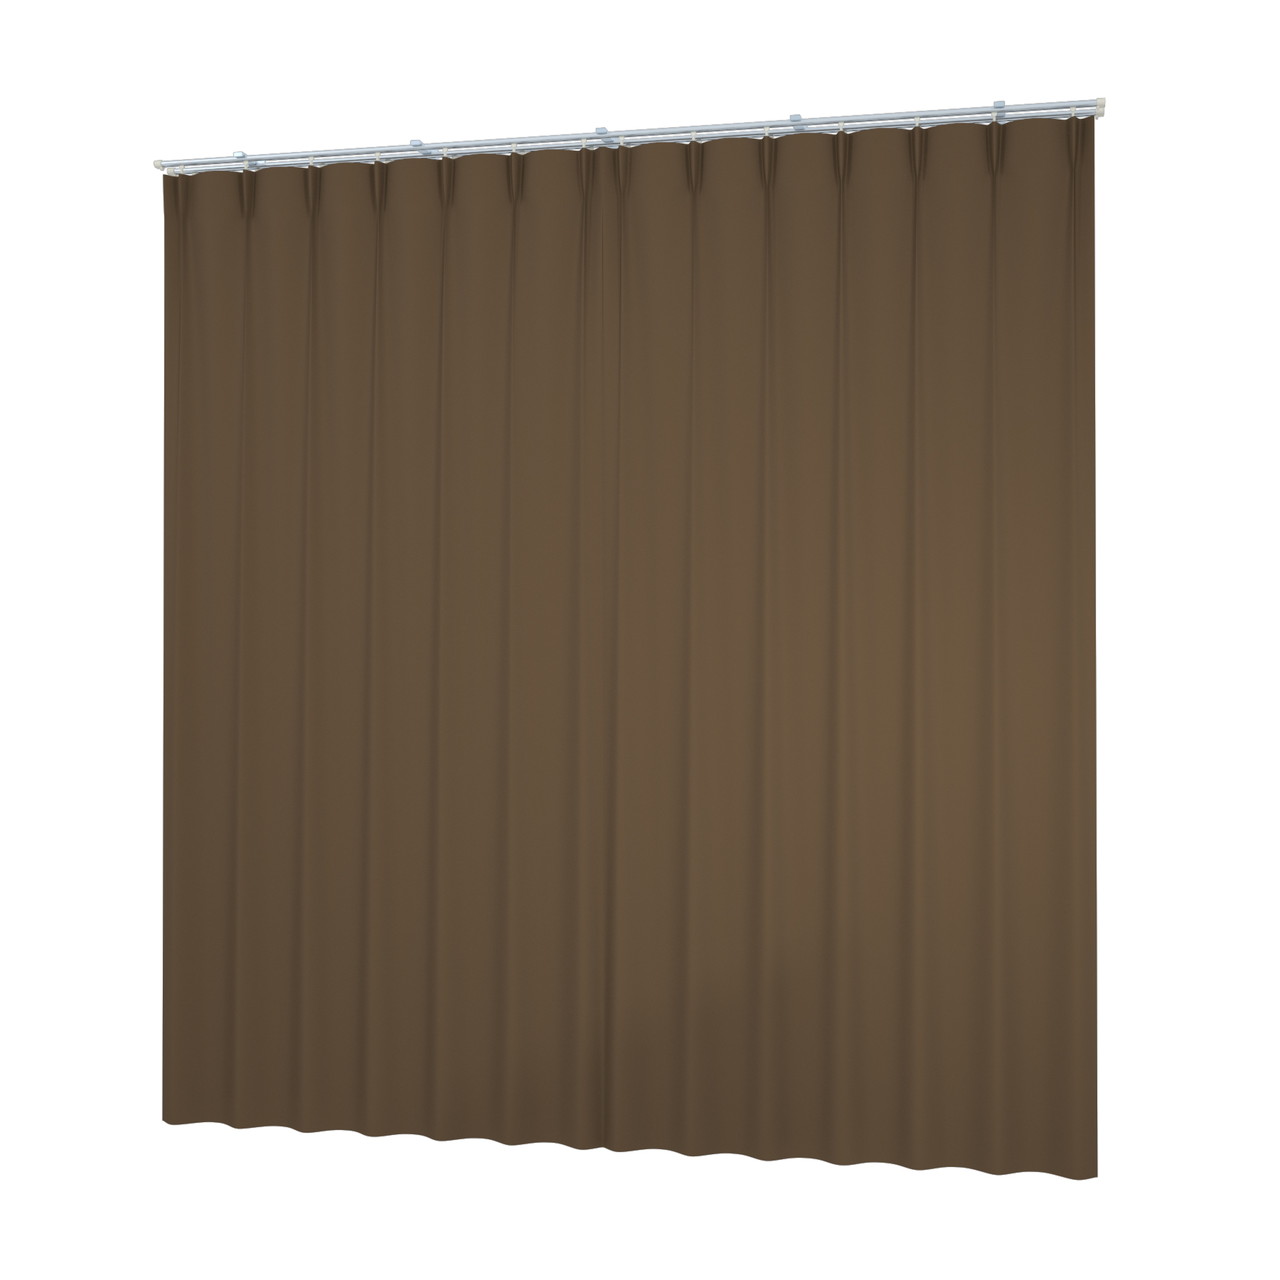 閉じたカーテンとレースのカーテン（ブラウン）の3DCADデータ│遮光カーテン レースのカーテン│シンプルなカーテンレール│3d cad データ フリー 無料 商用可能 建築パース フリー素材 formZ 3D 3ds obj インテリア interior curtain